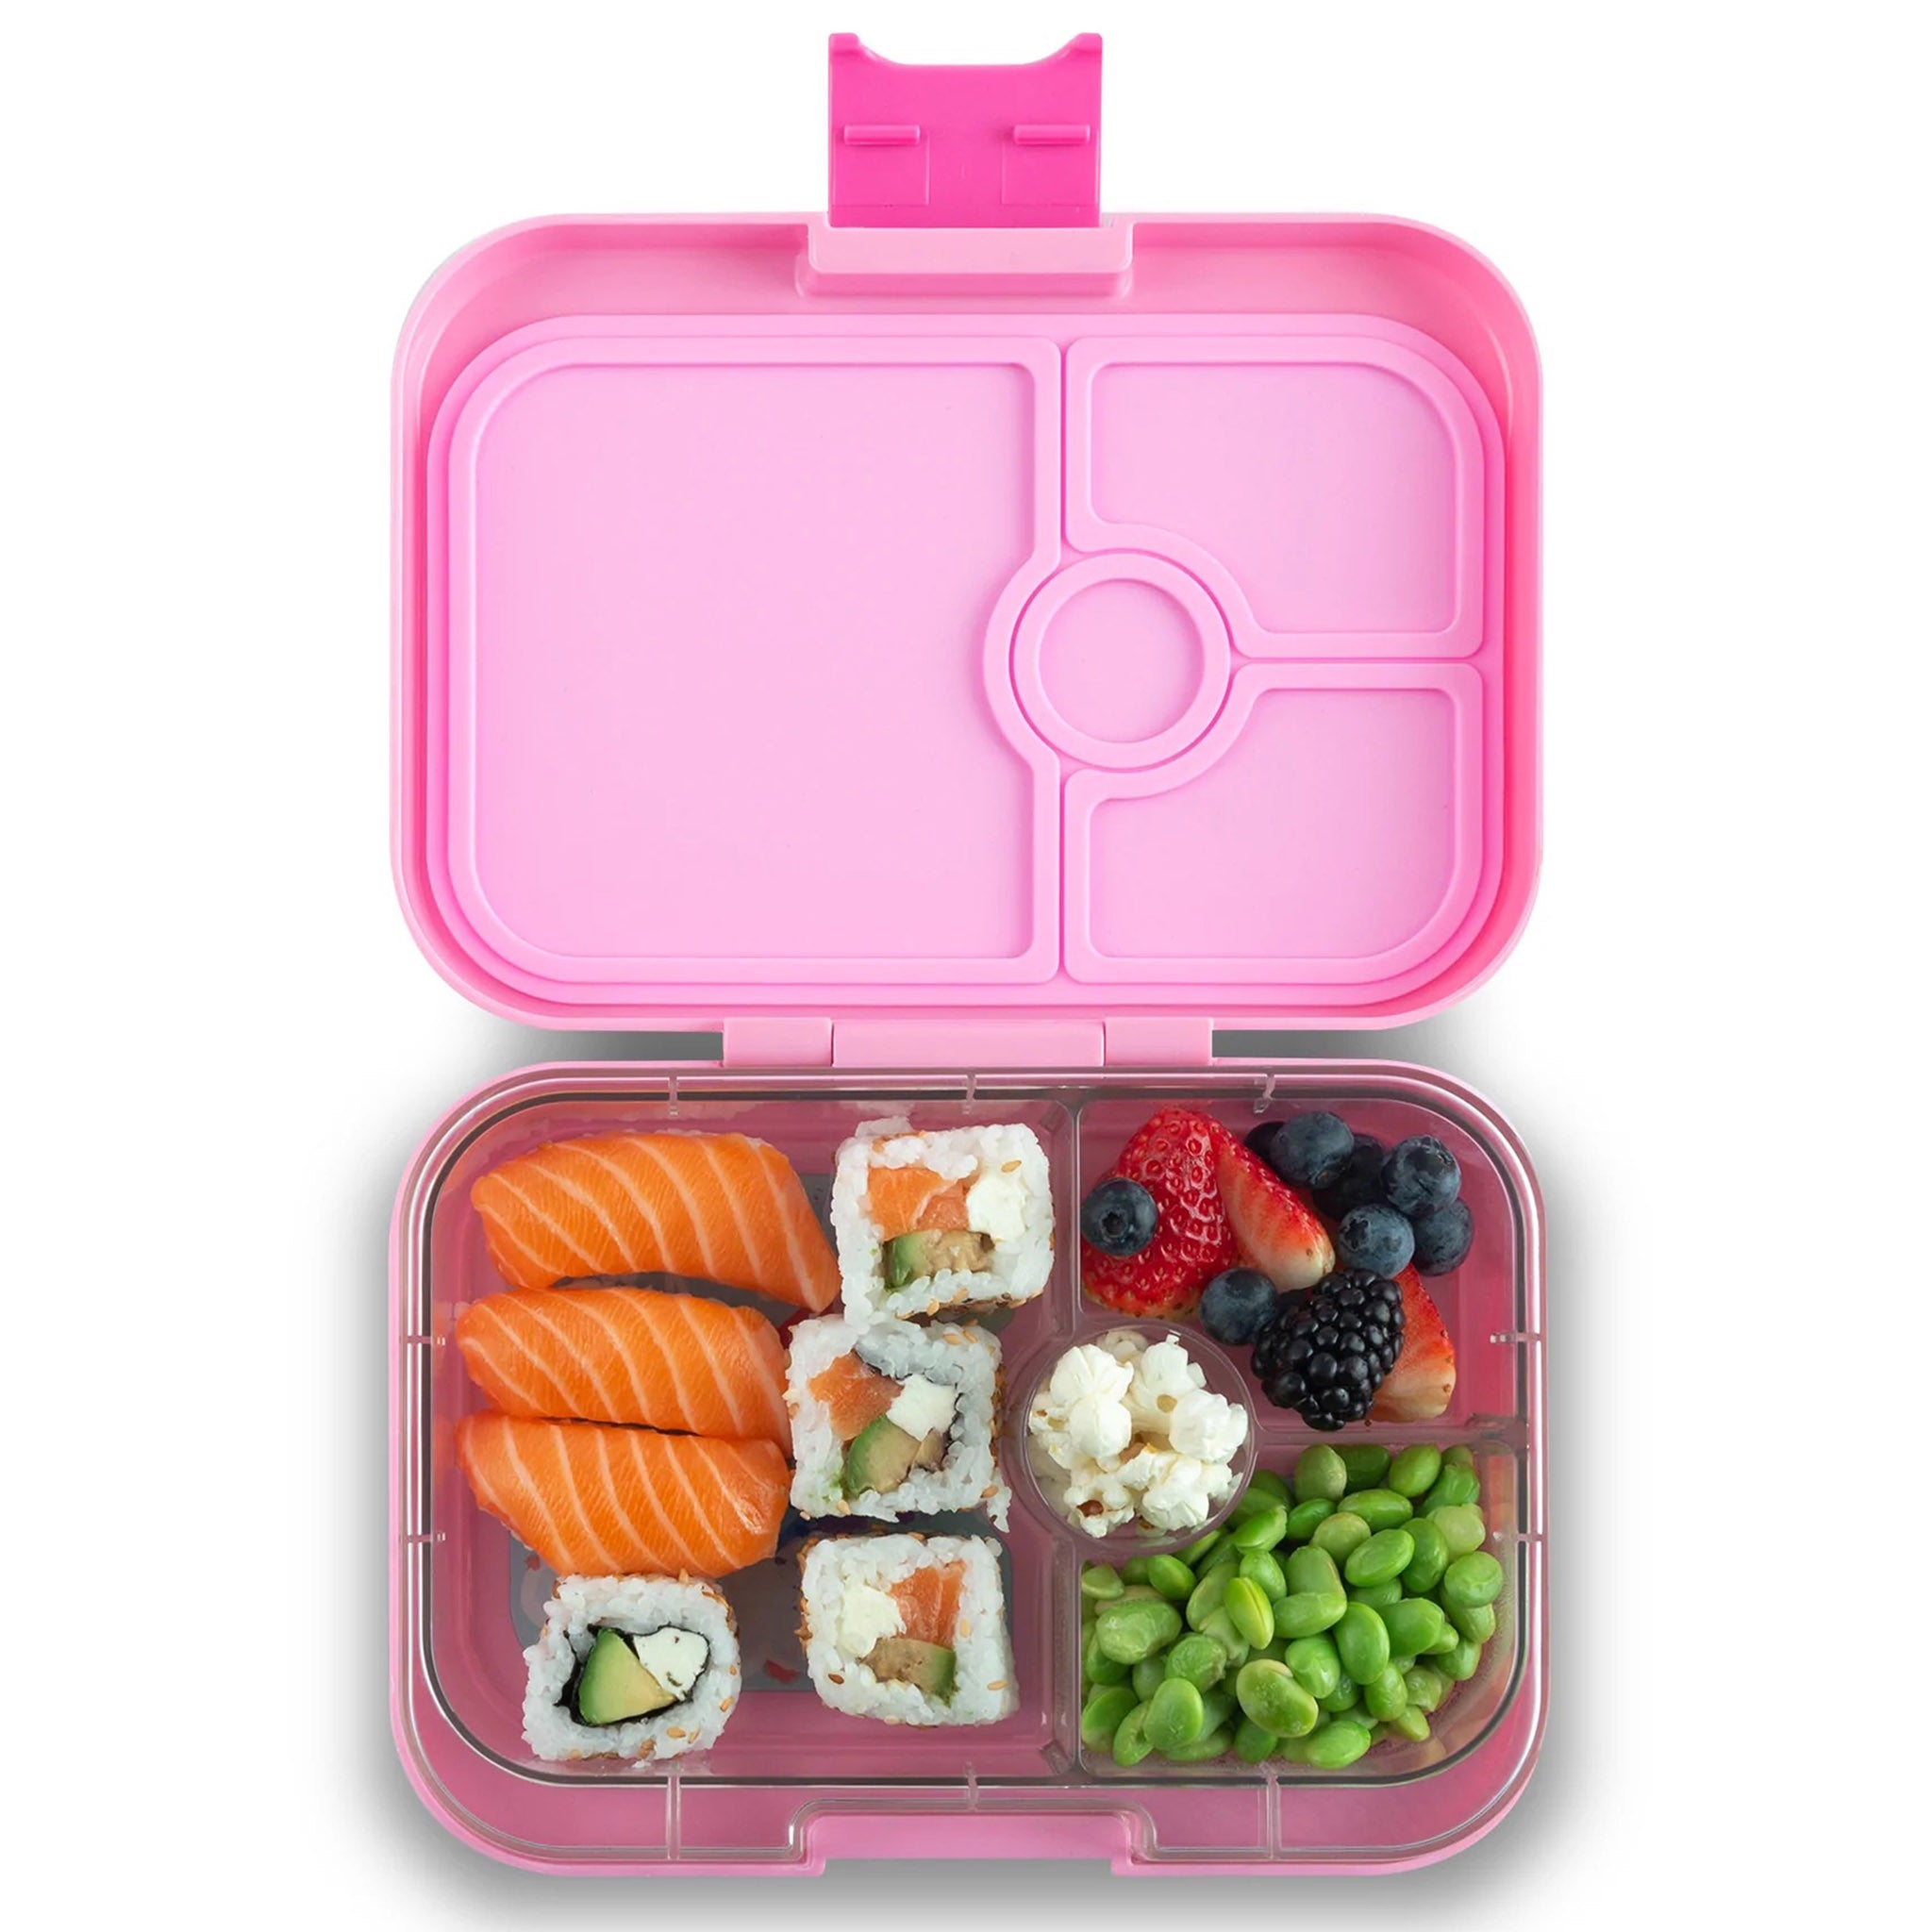 Yumbox Panino Bento Lunch Box Fifi Pink, Plastic